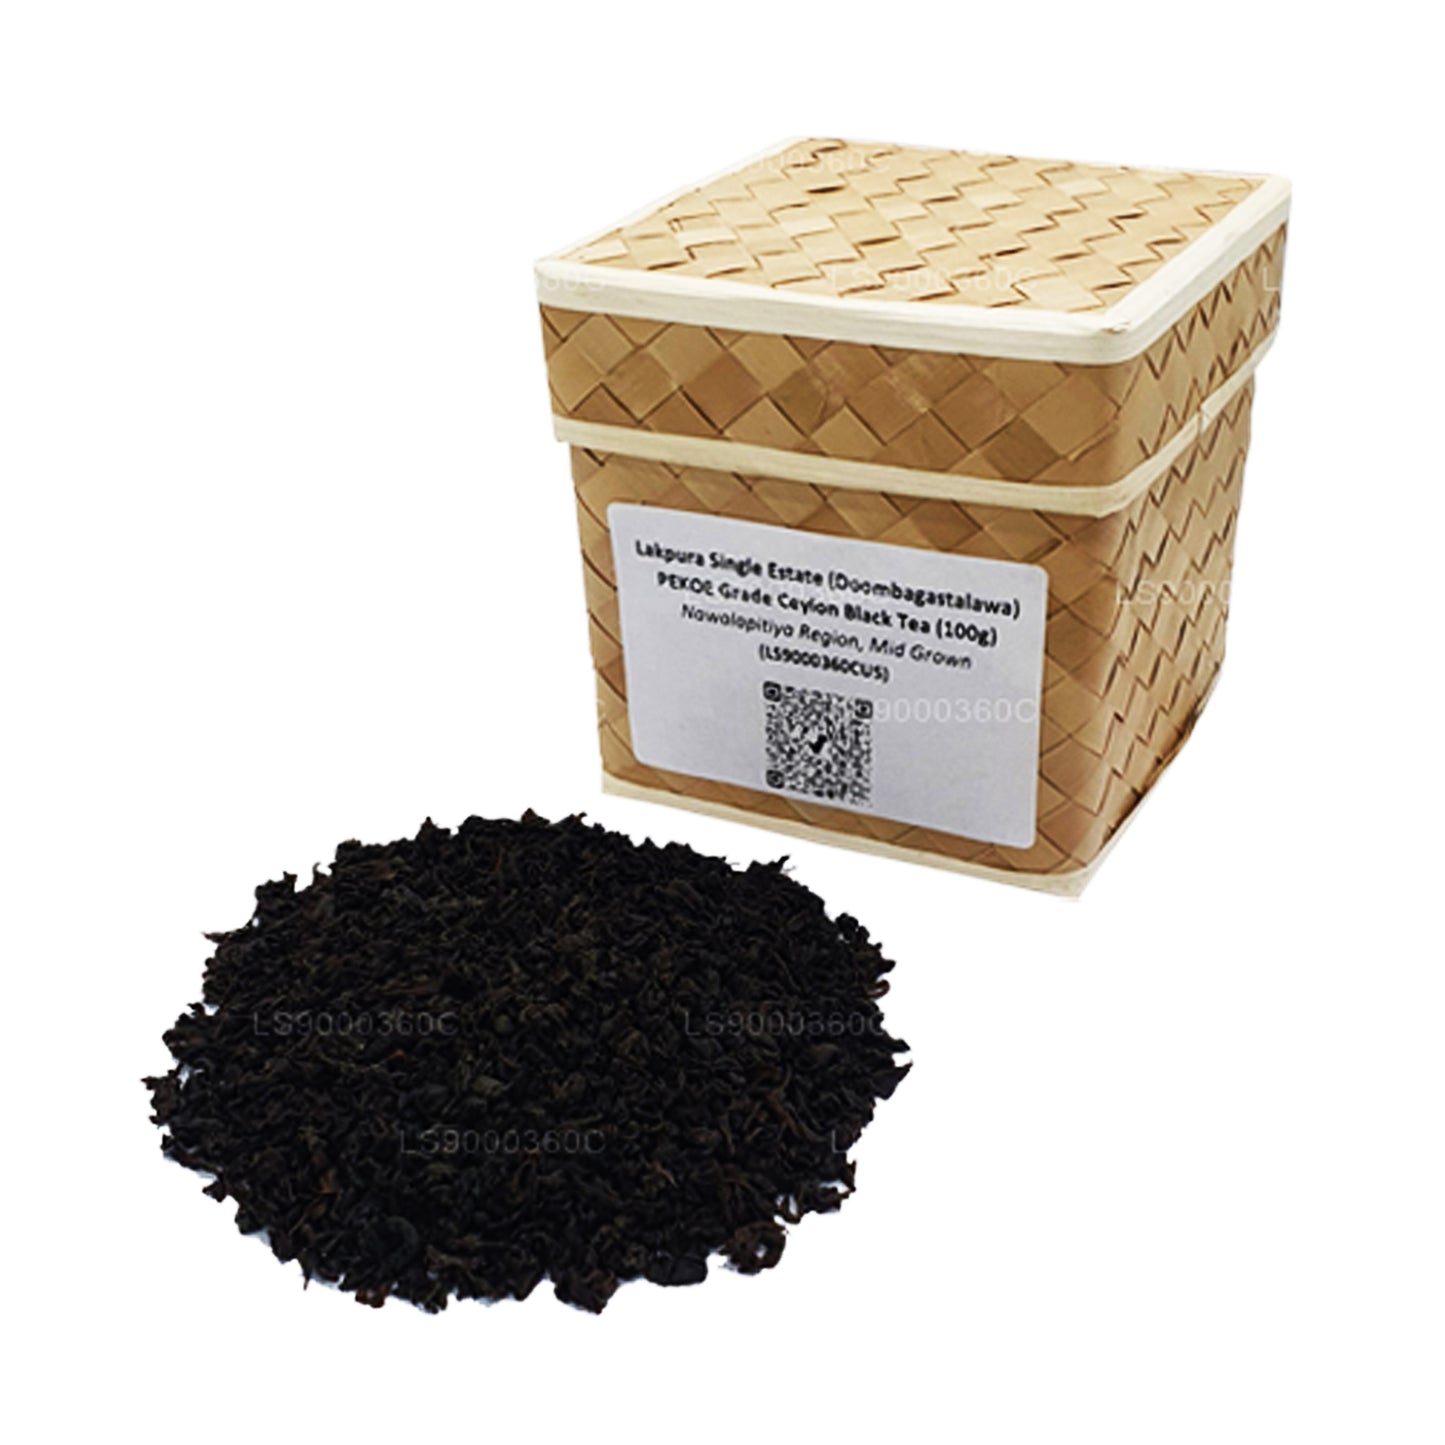 Lakpura シングルエステート (ドゥームバガスタラワ) PEKOE グレードセイロン紅茶 (100g)